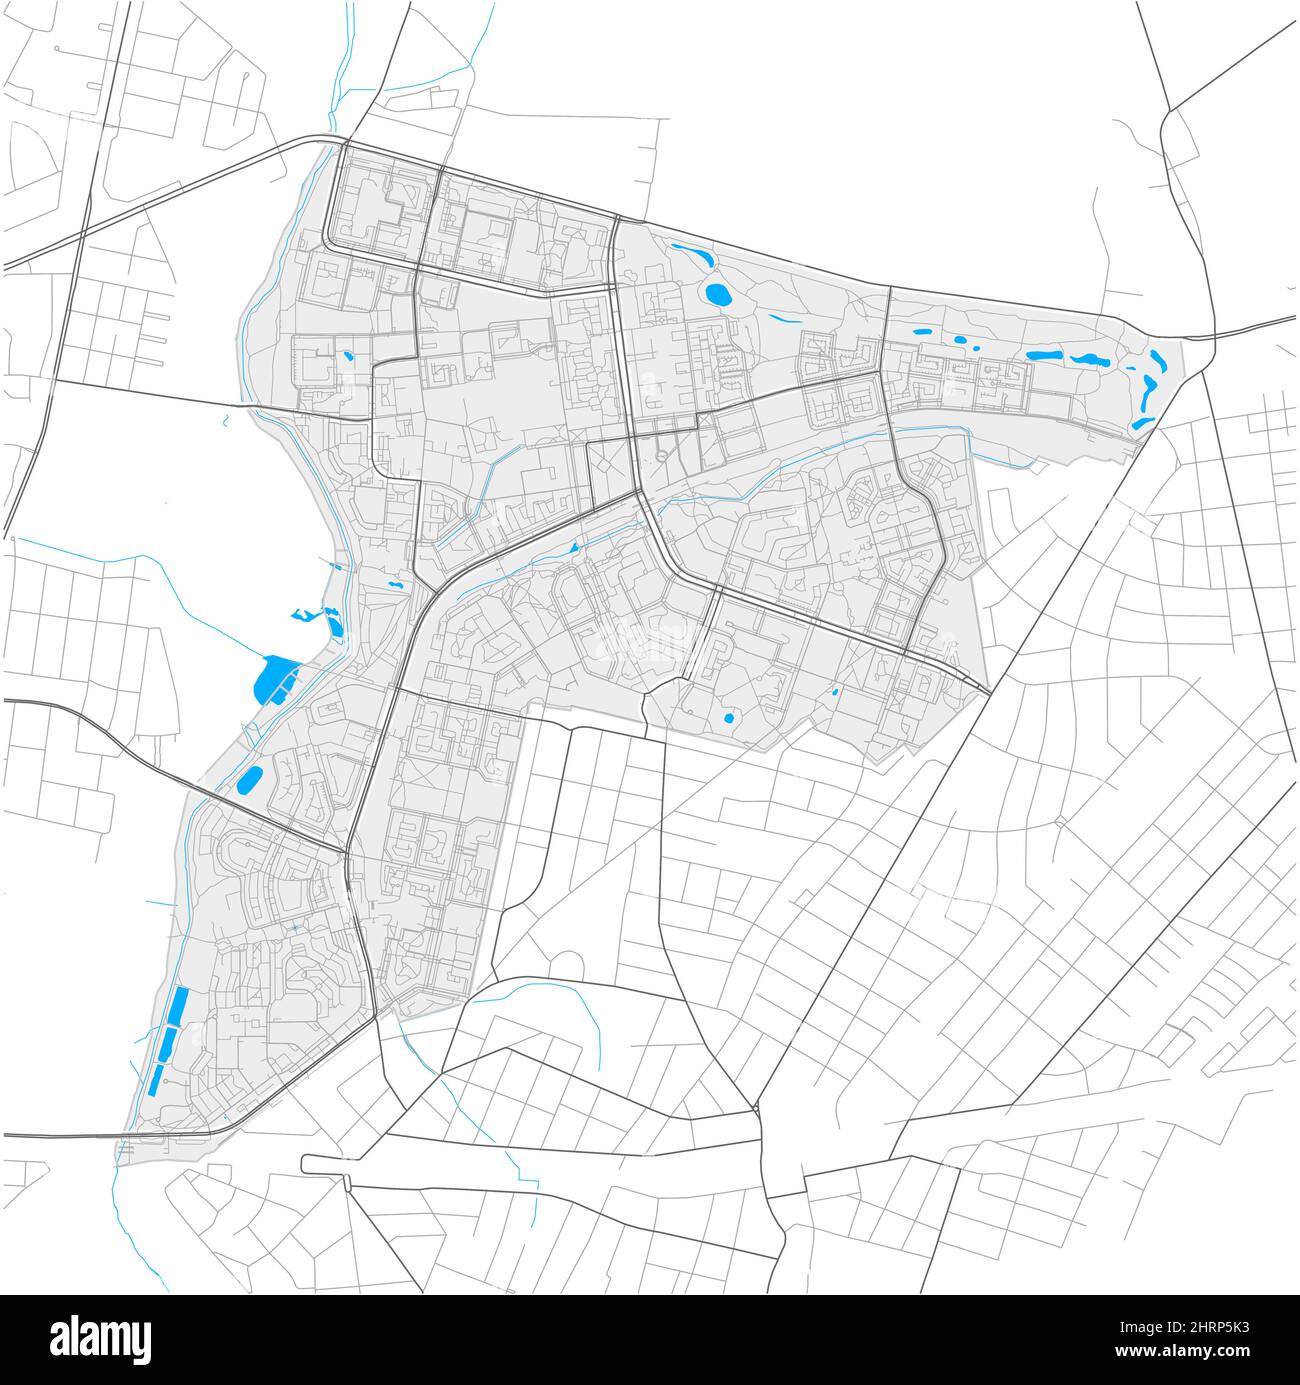 Hellersdorf, Berlino, DEUTSCHLAND, mappa vettoriale ad alto dettaglio con confini della città e percorsi modificabili. Contorni bianchi per le strade principali. Molti percorsi più piccoli. B Illustrazione Vettoriale